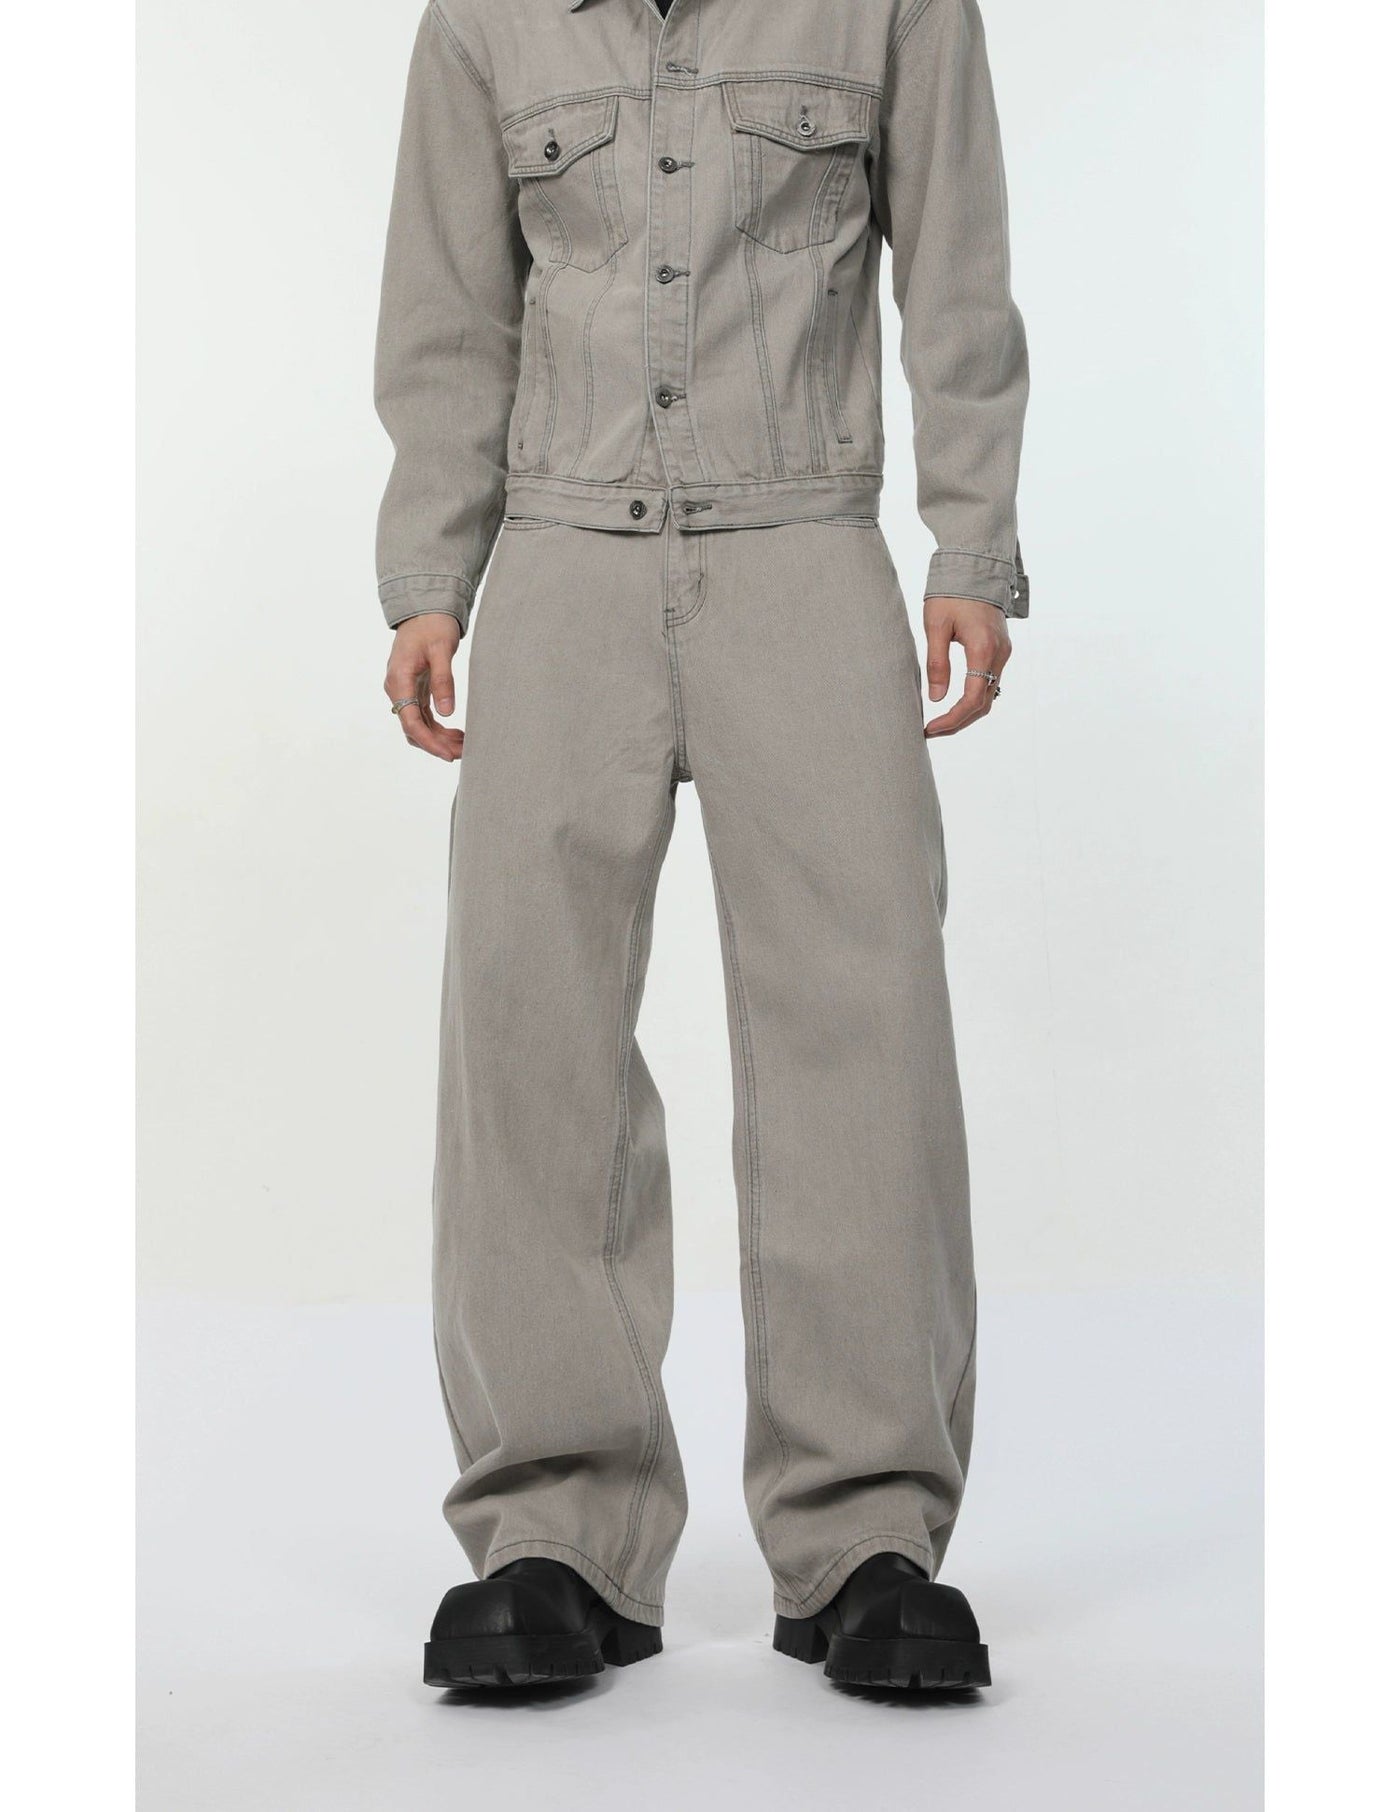 Regular Fit Versatile Denim Jacket & Jeans Set Korean Street Fashion Clothing Set By Turn Tide Shop Online at OH Vault